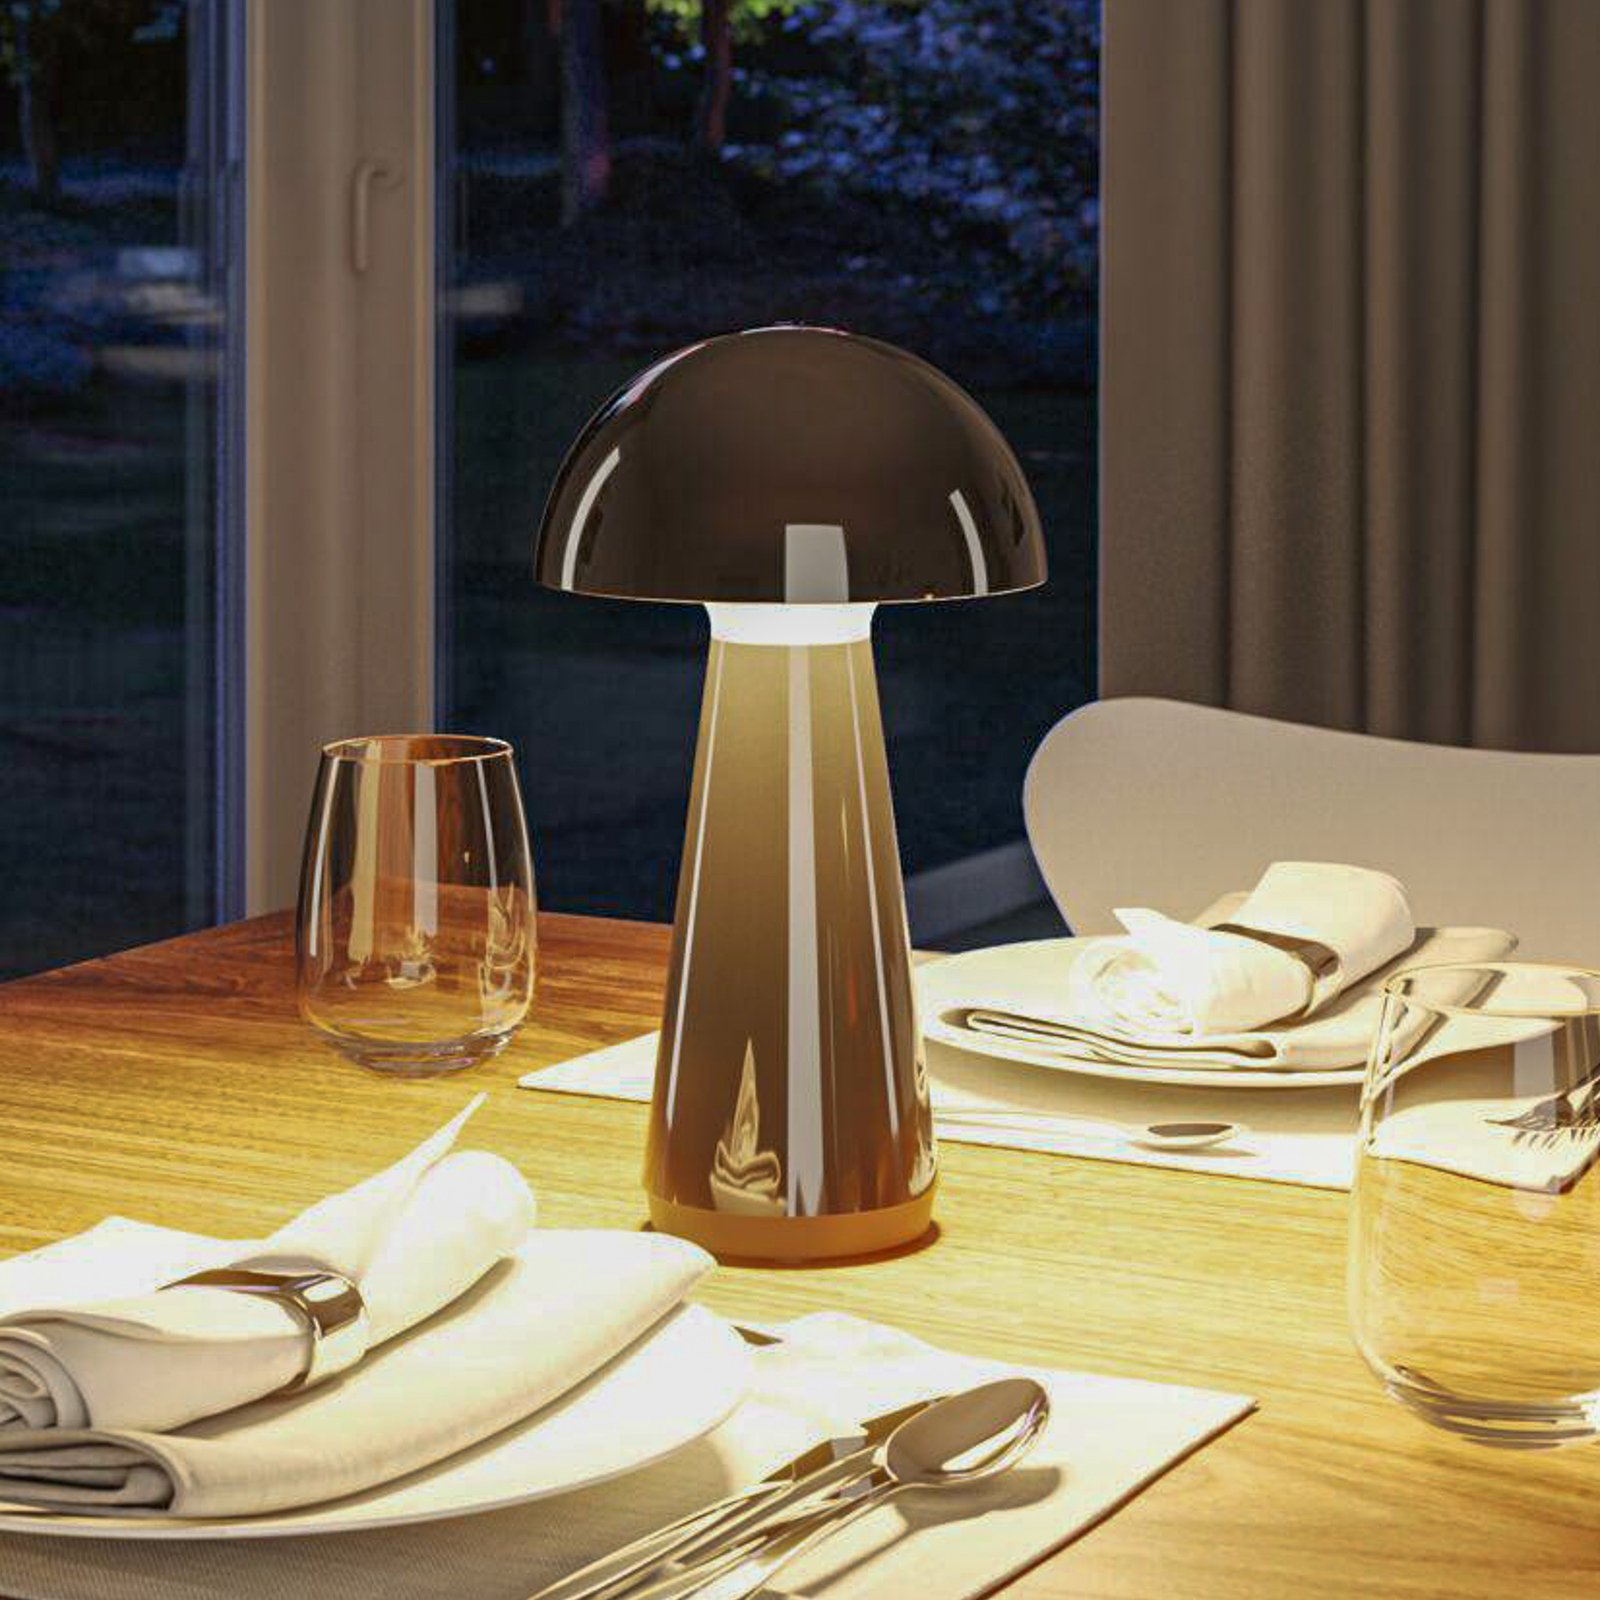 Nabíjecí stolní lampa Paulmann LED Onzo, černá, plast, IP44